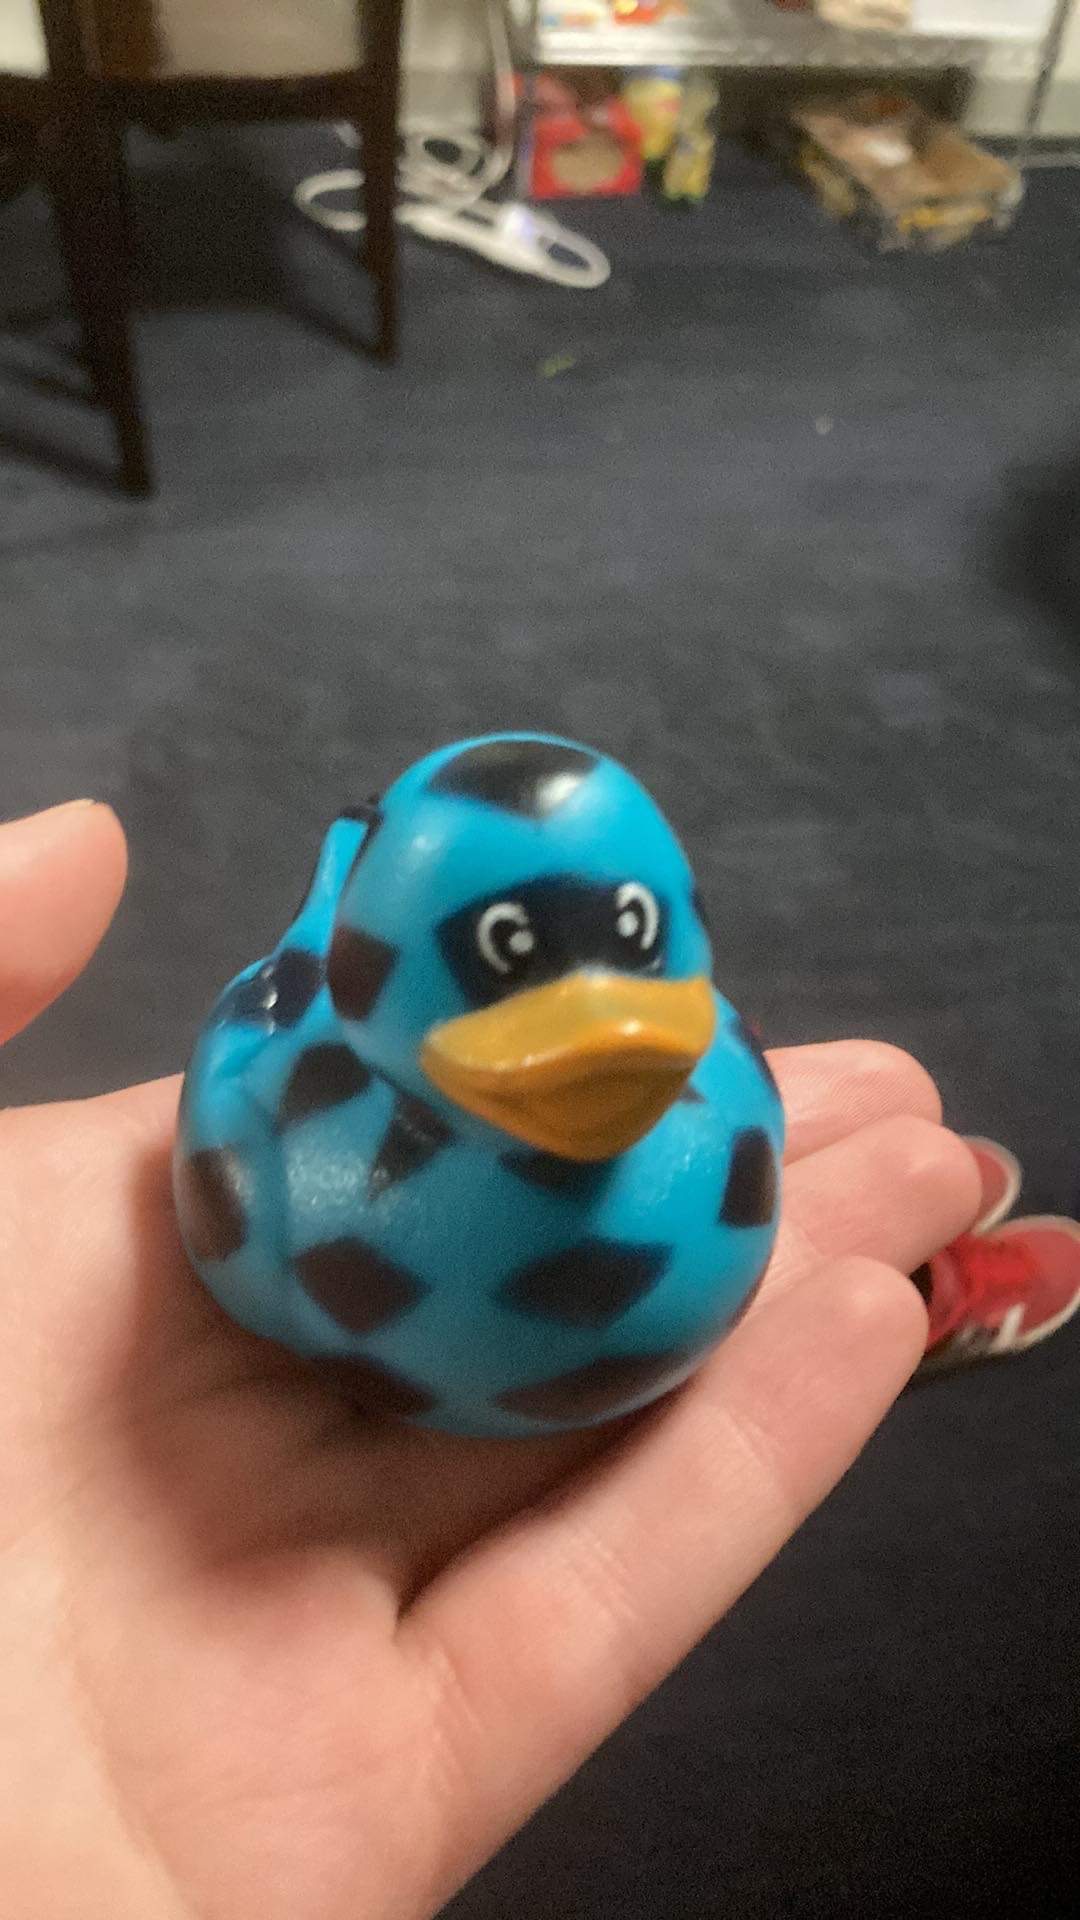 Plastic blue duck held in hand